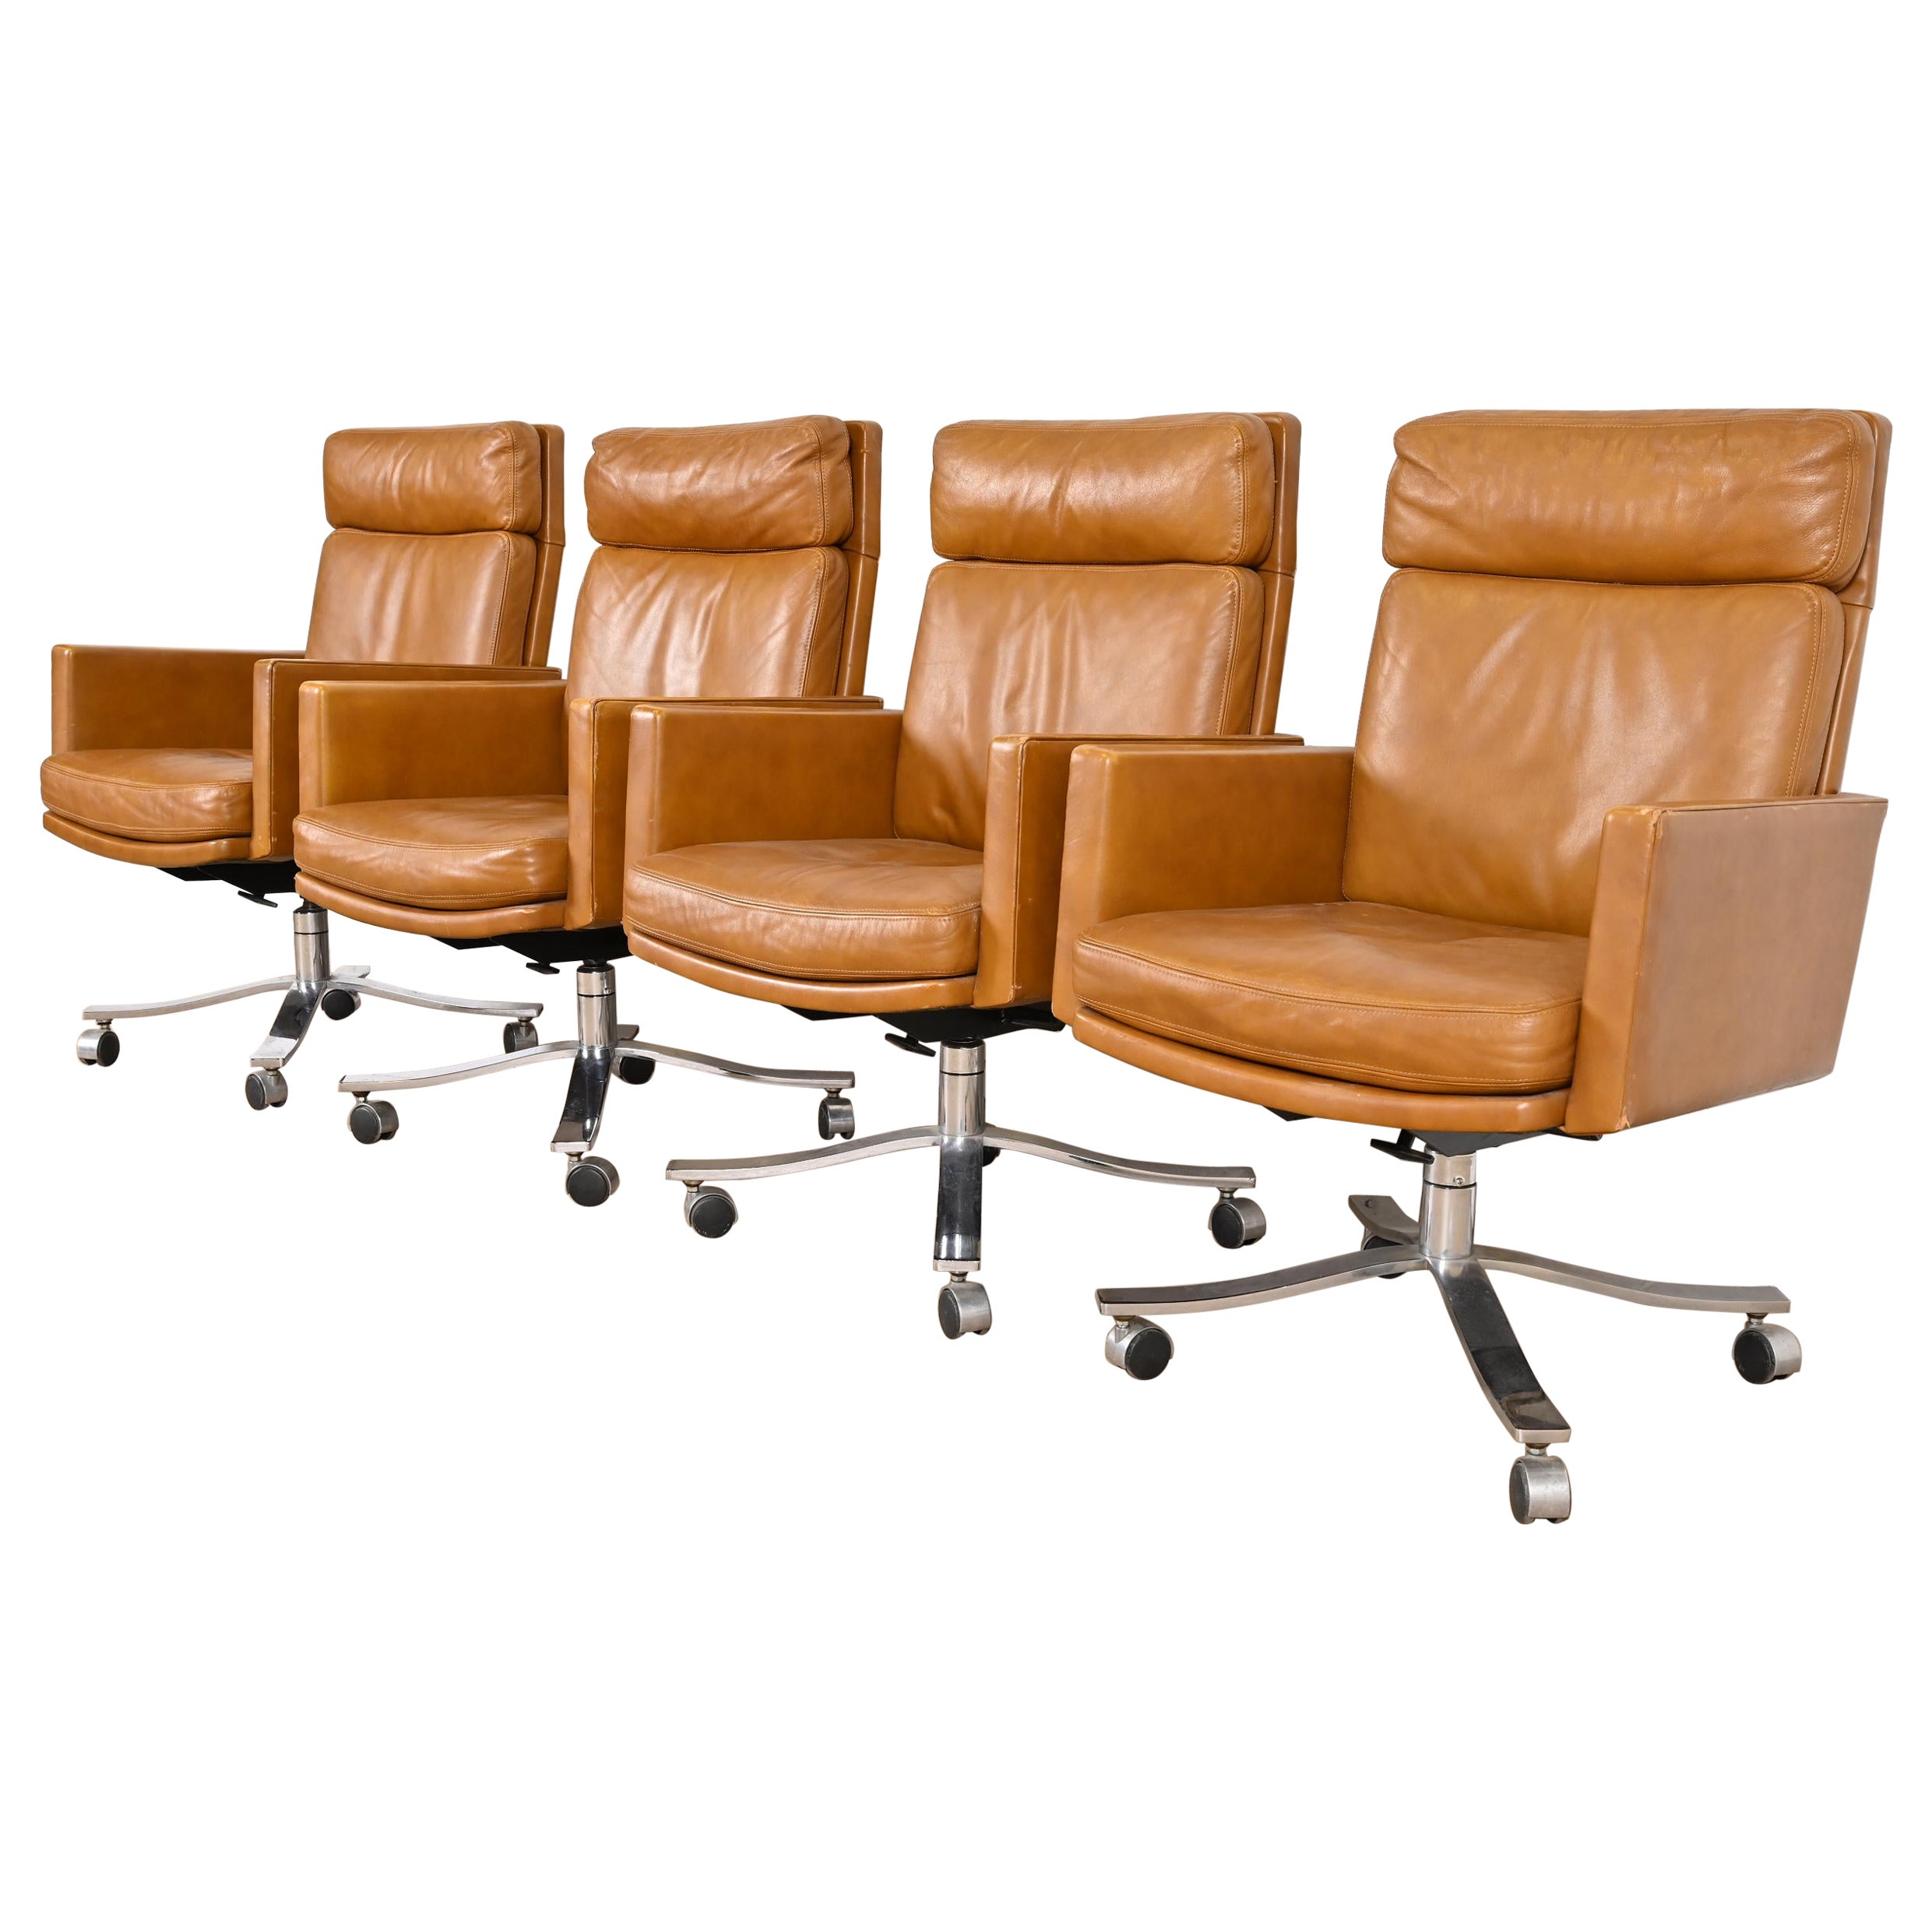 Ensemble de quatre chaises de bureau pivotantes Stow Davis en cuir, de style moderne du milieu du siècle dernier